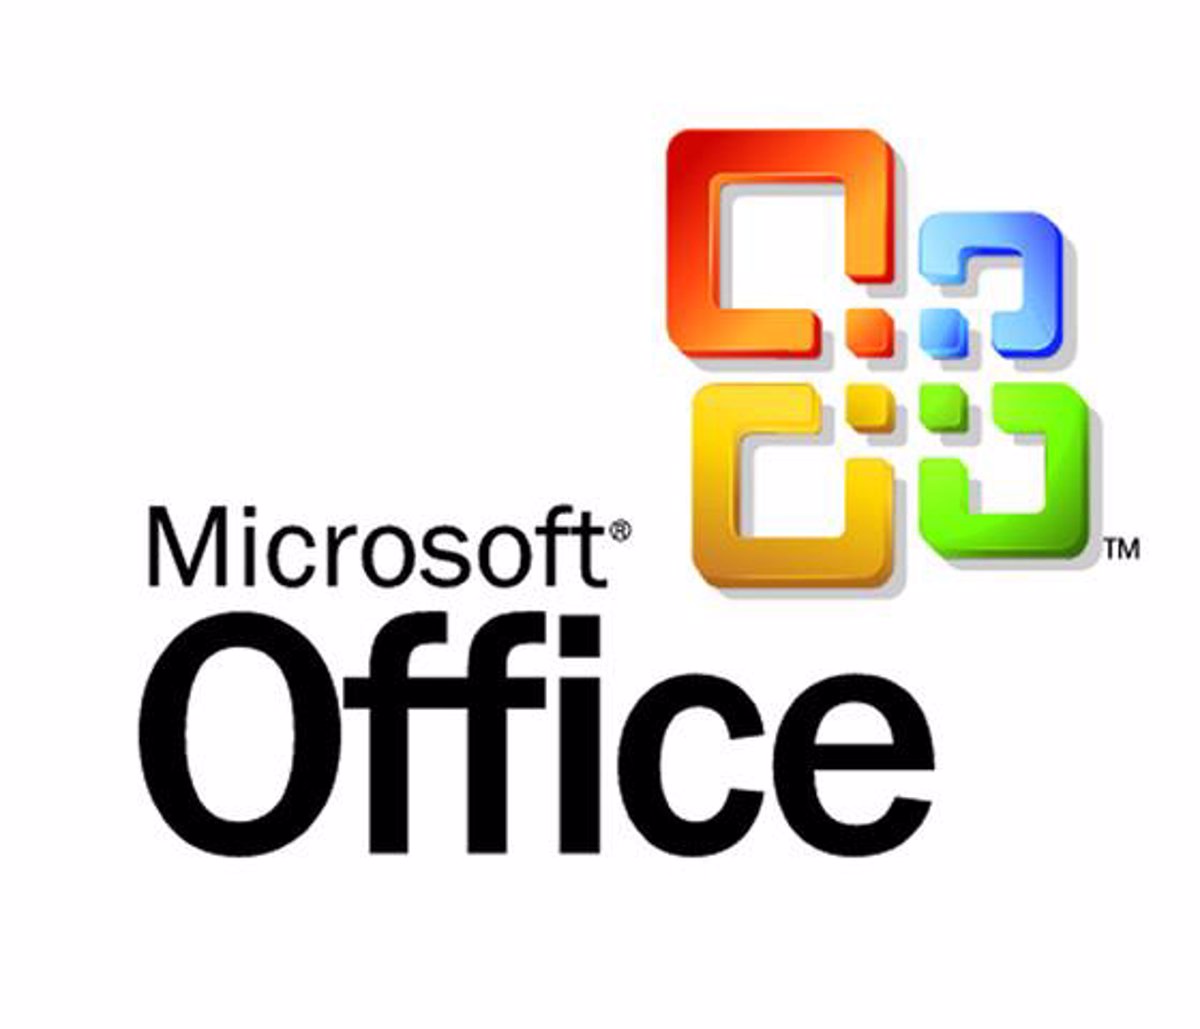 Actualización gratuita a la versión de 2010 para los usuarios de Office 2007